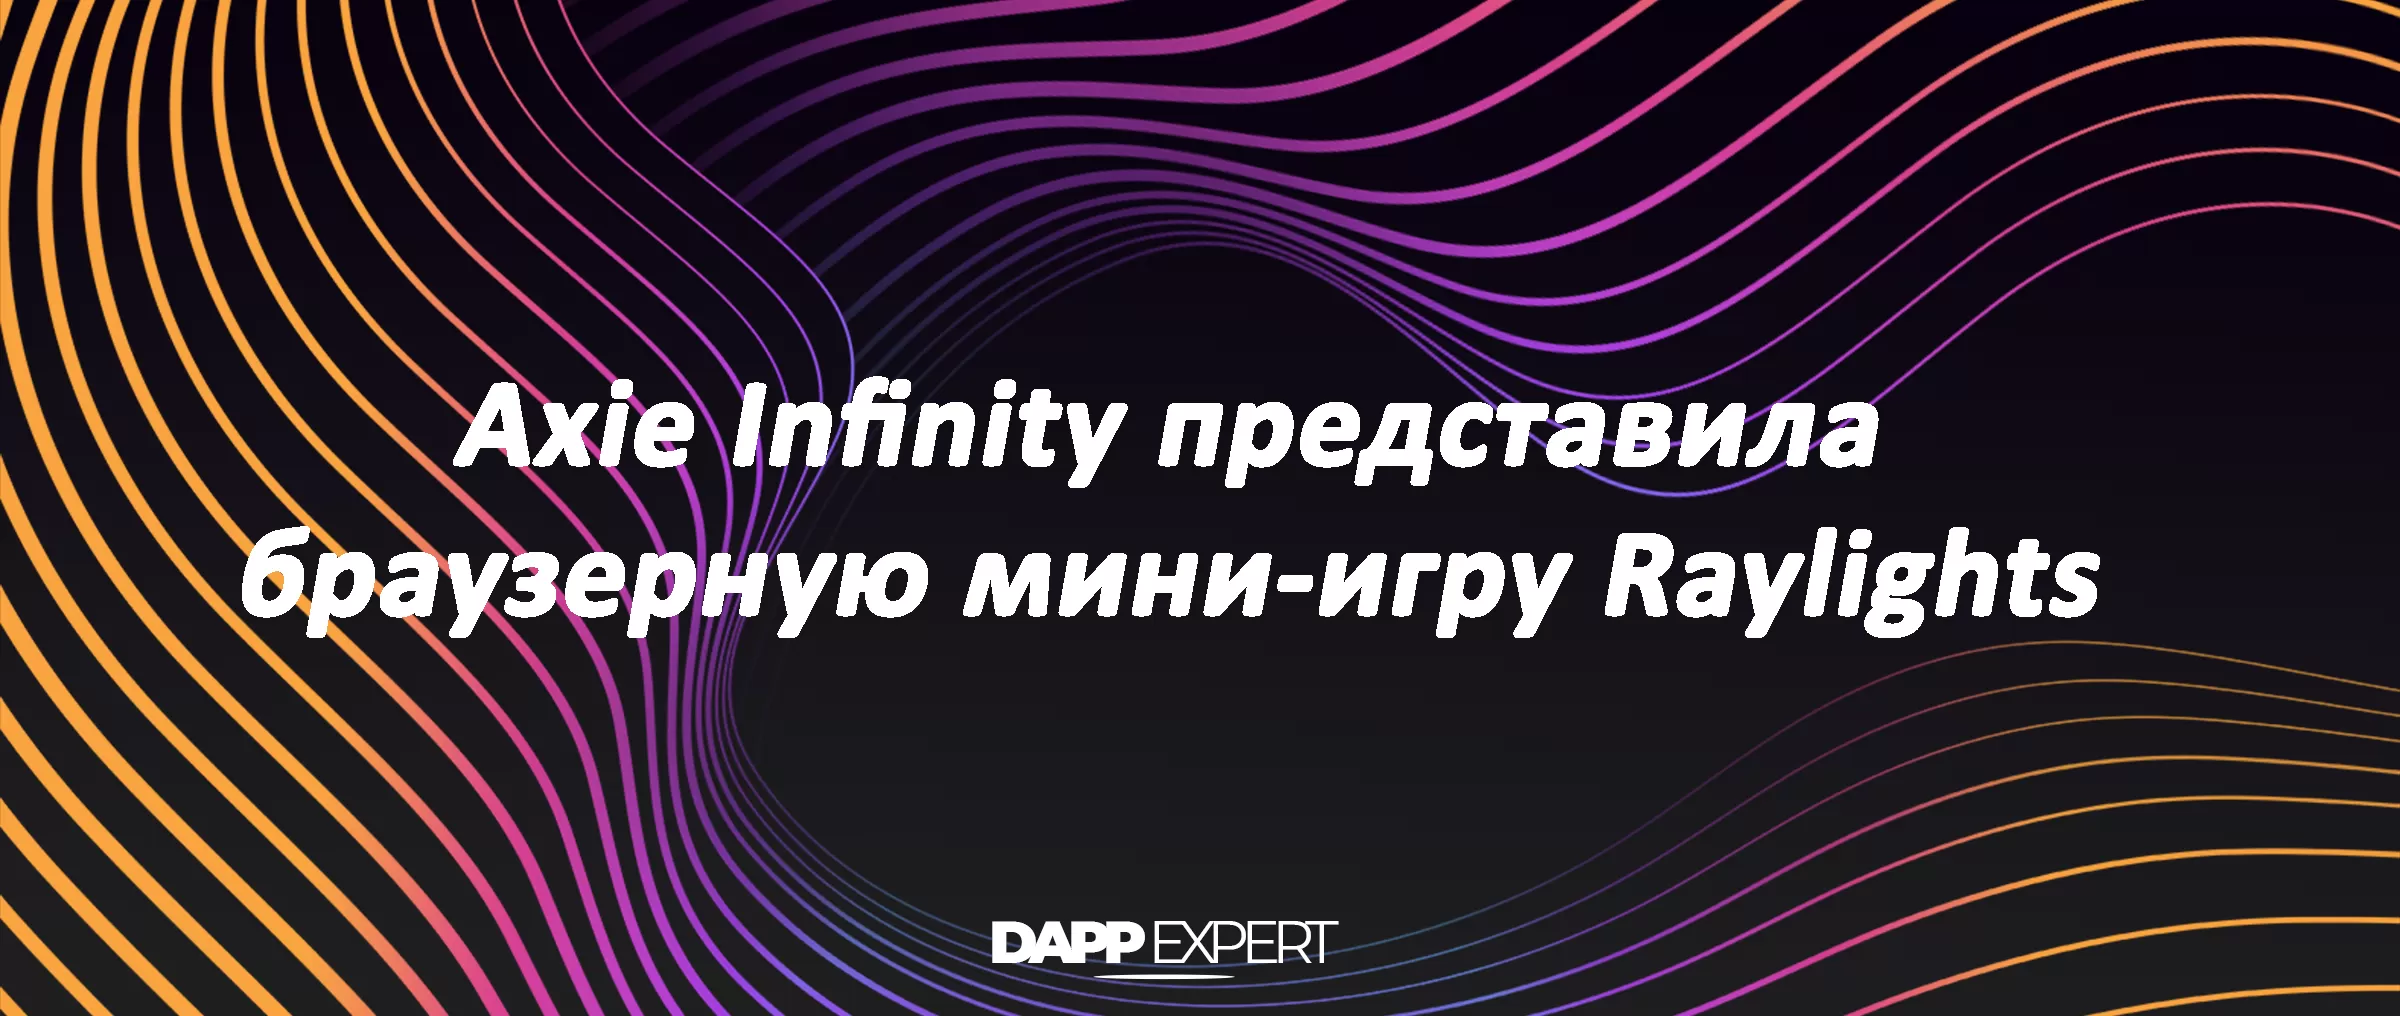 Axie Infinity представила браузерную мини-игру Raylights